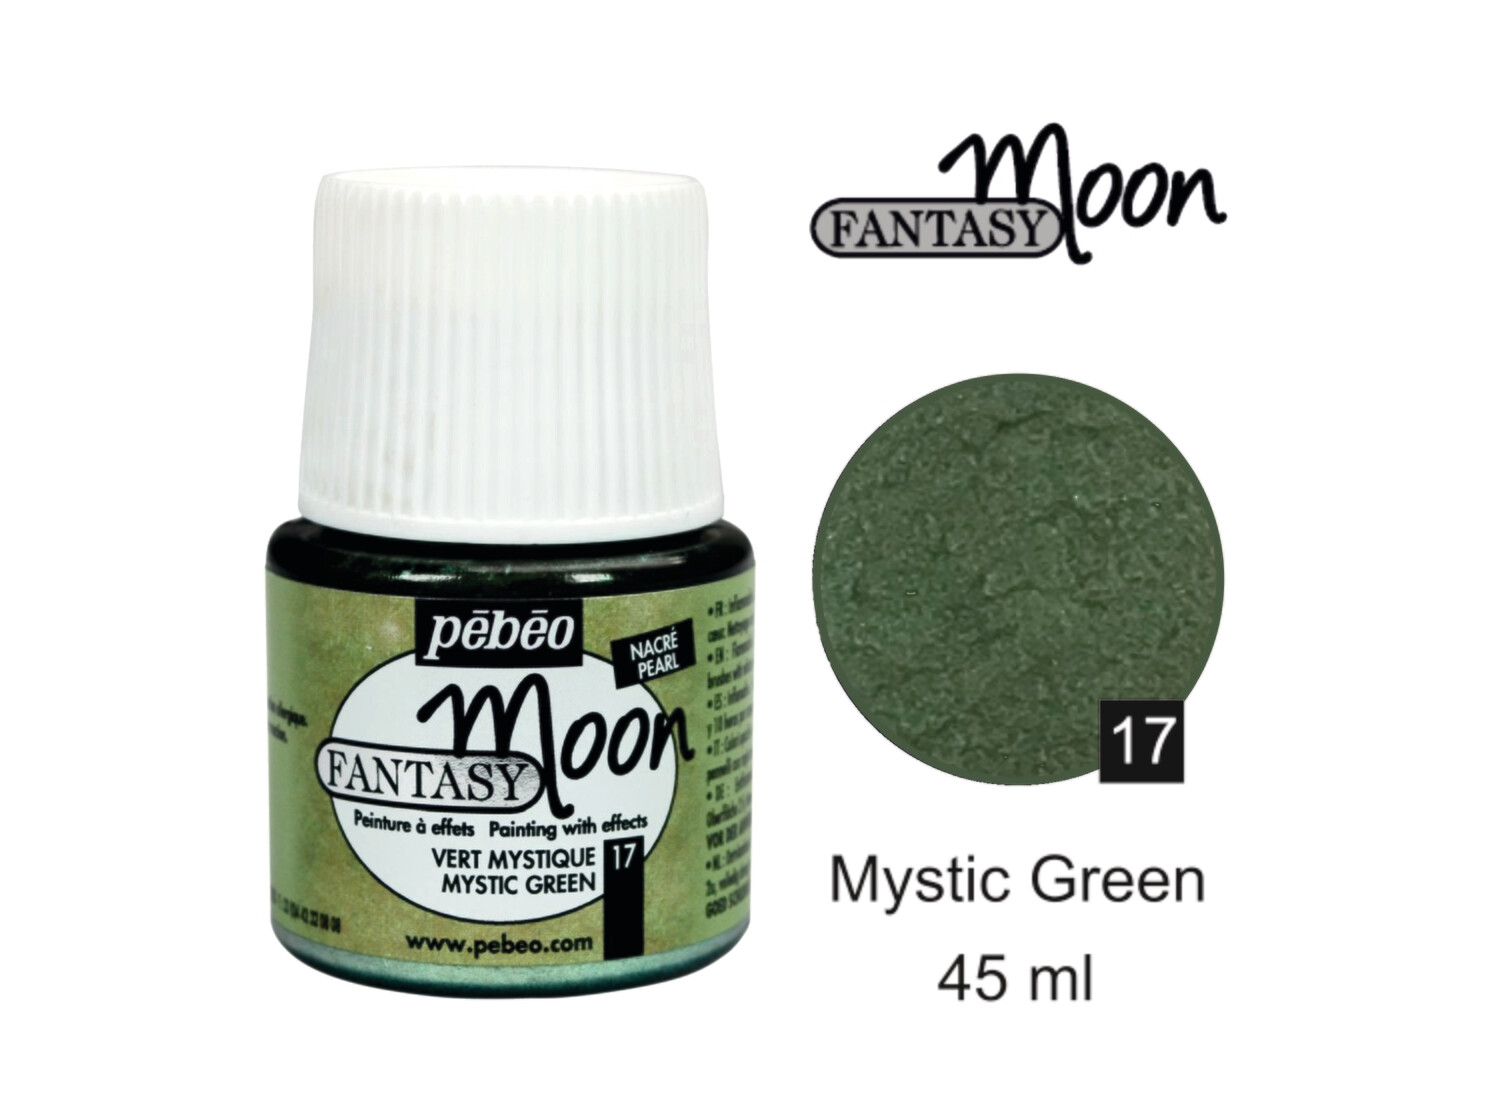 Fantasy Moon Decorative color Mystic green No. 17 , 45 ml